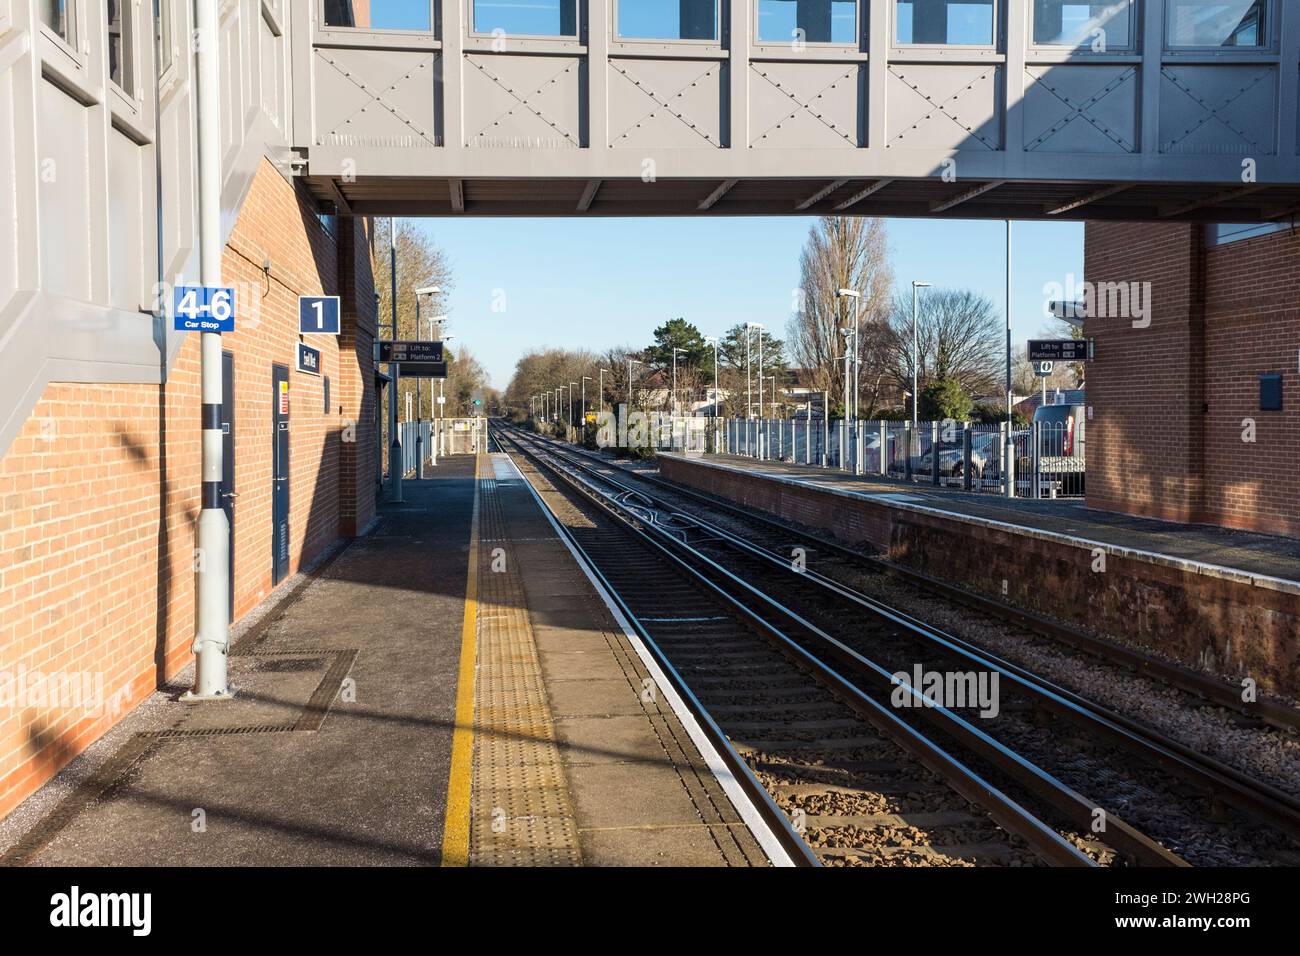 Ewell West Train Station, Surrey, UK Stock Photo